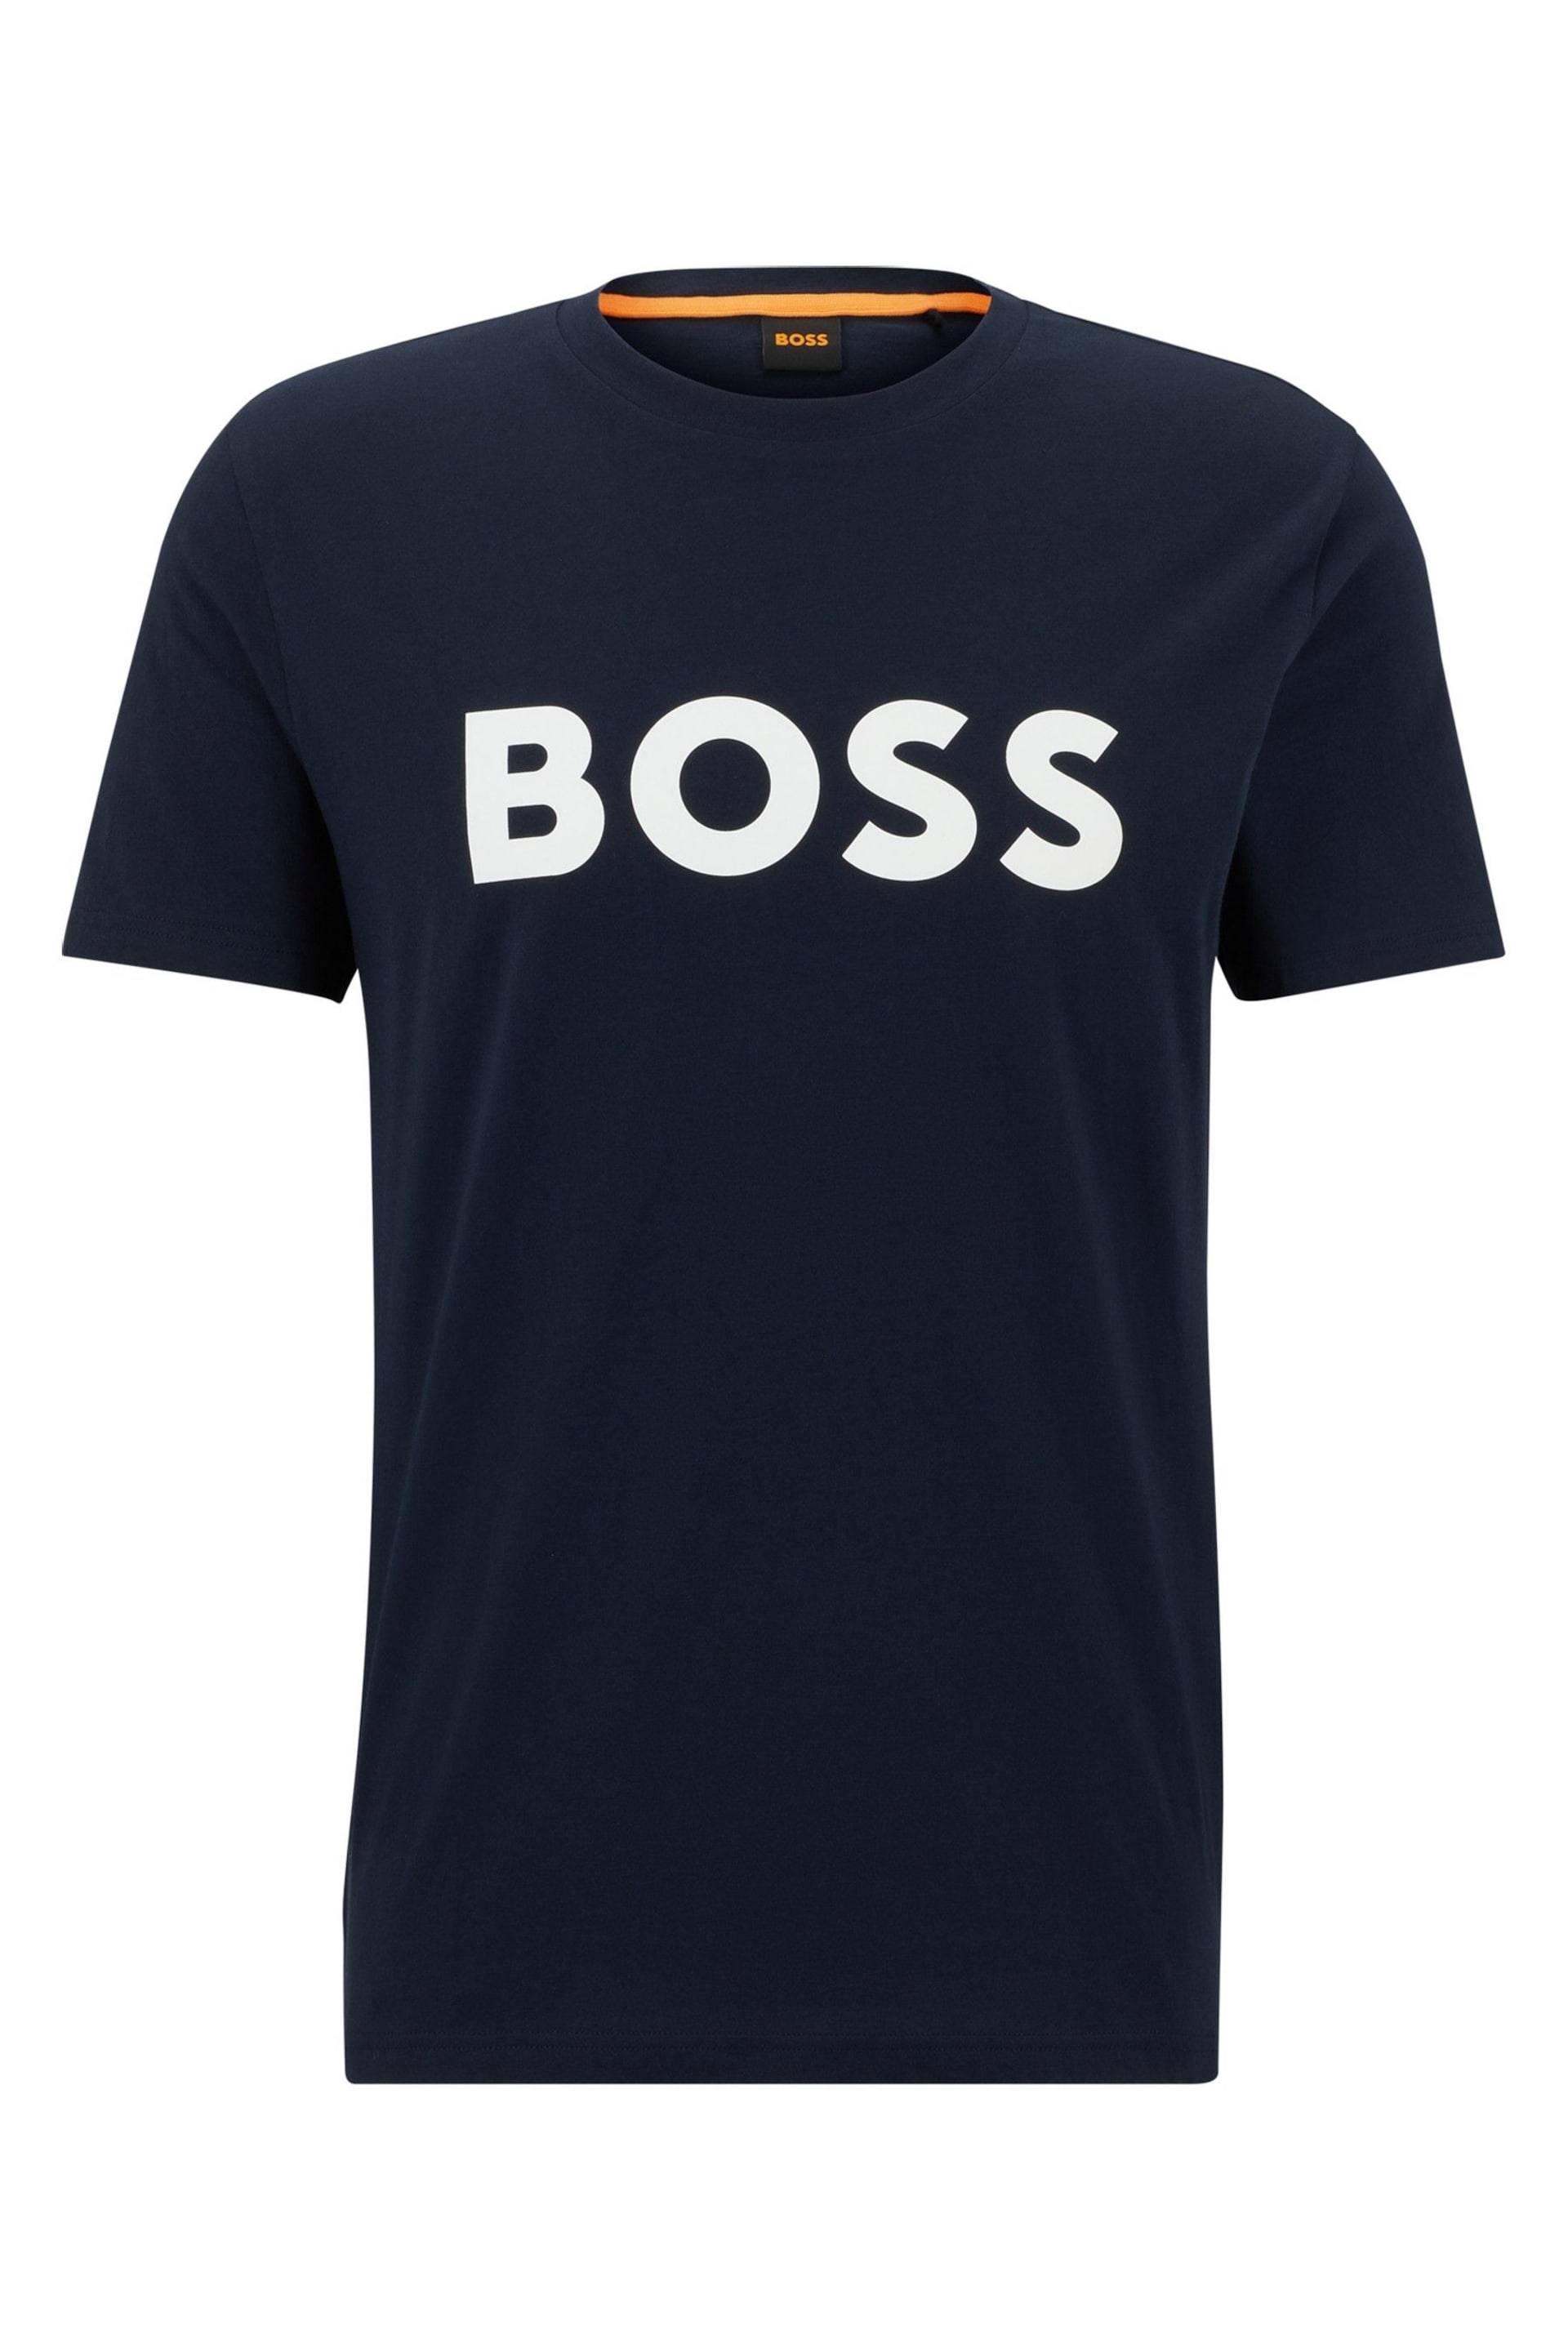 BOSS Dark Blue/White Logo Large Chest Logo T-Shirt - Image 5 of 5